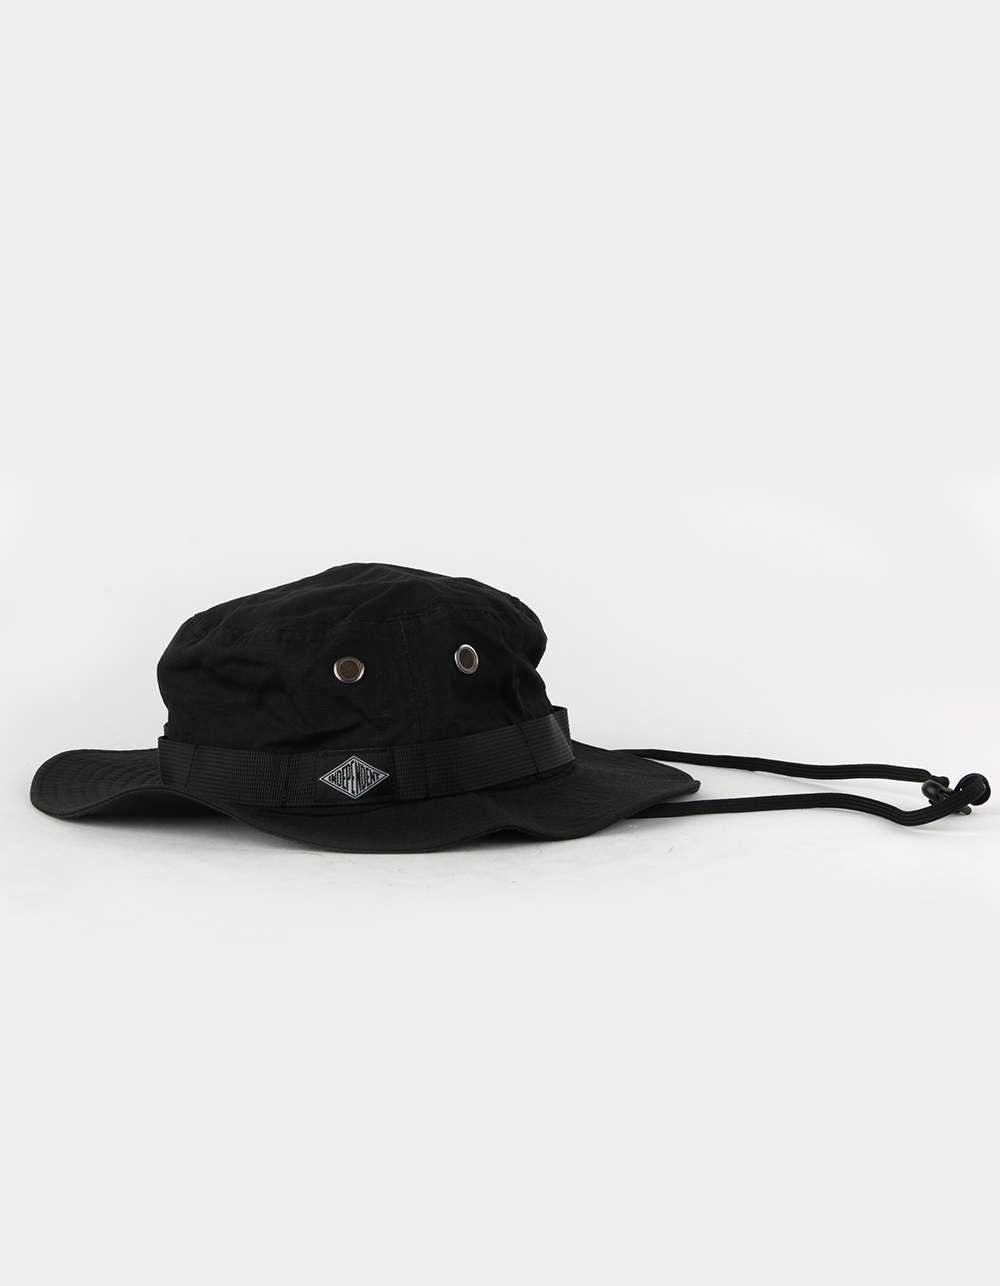 Independent Diamond Groundwork Boonie Hat - Black - One Size